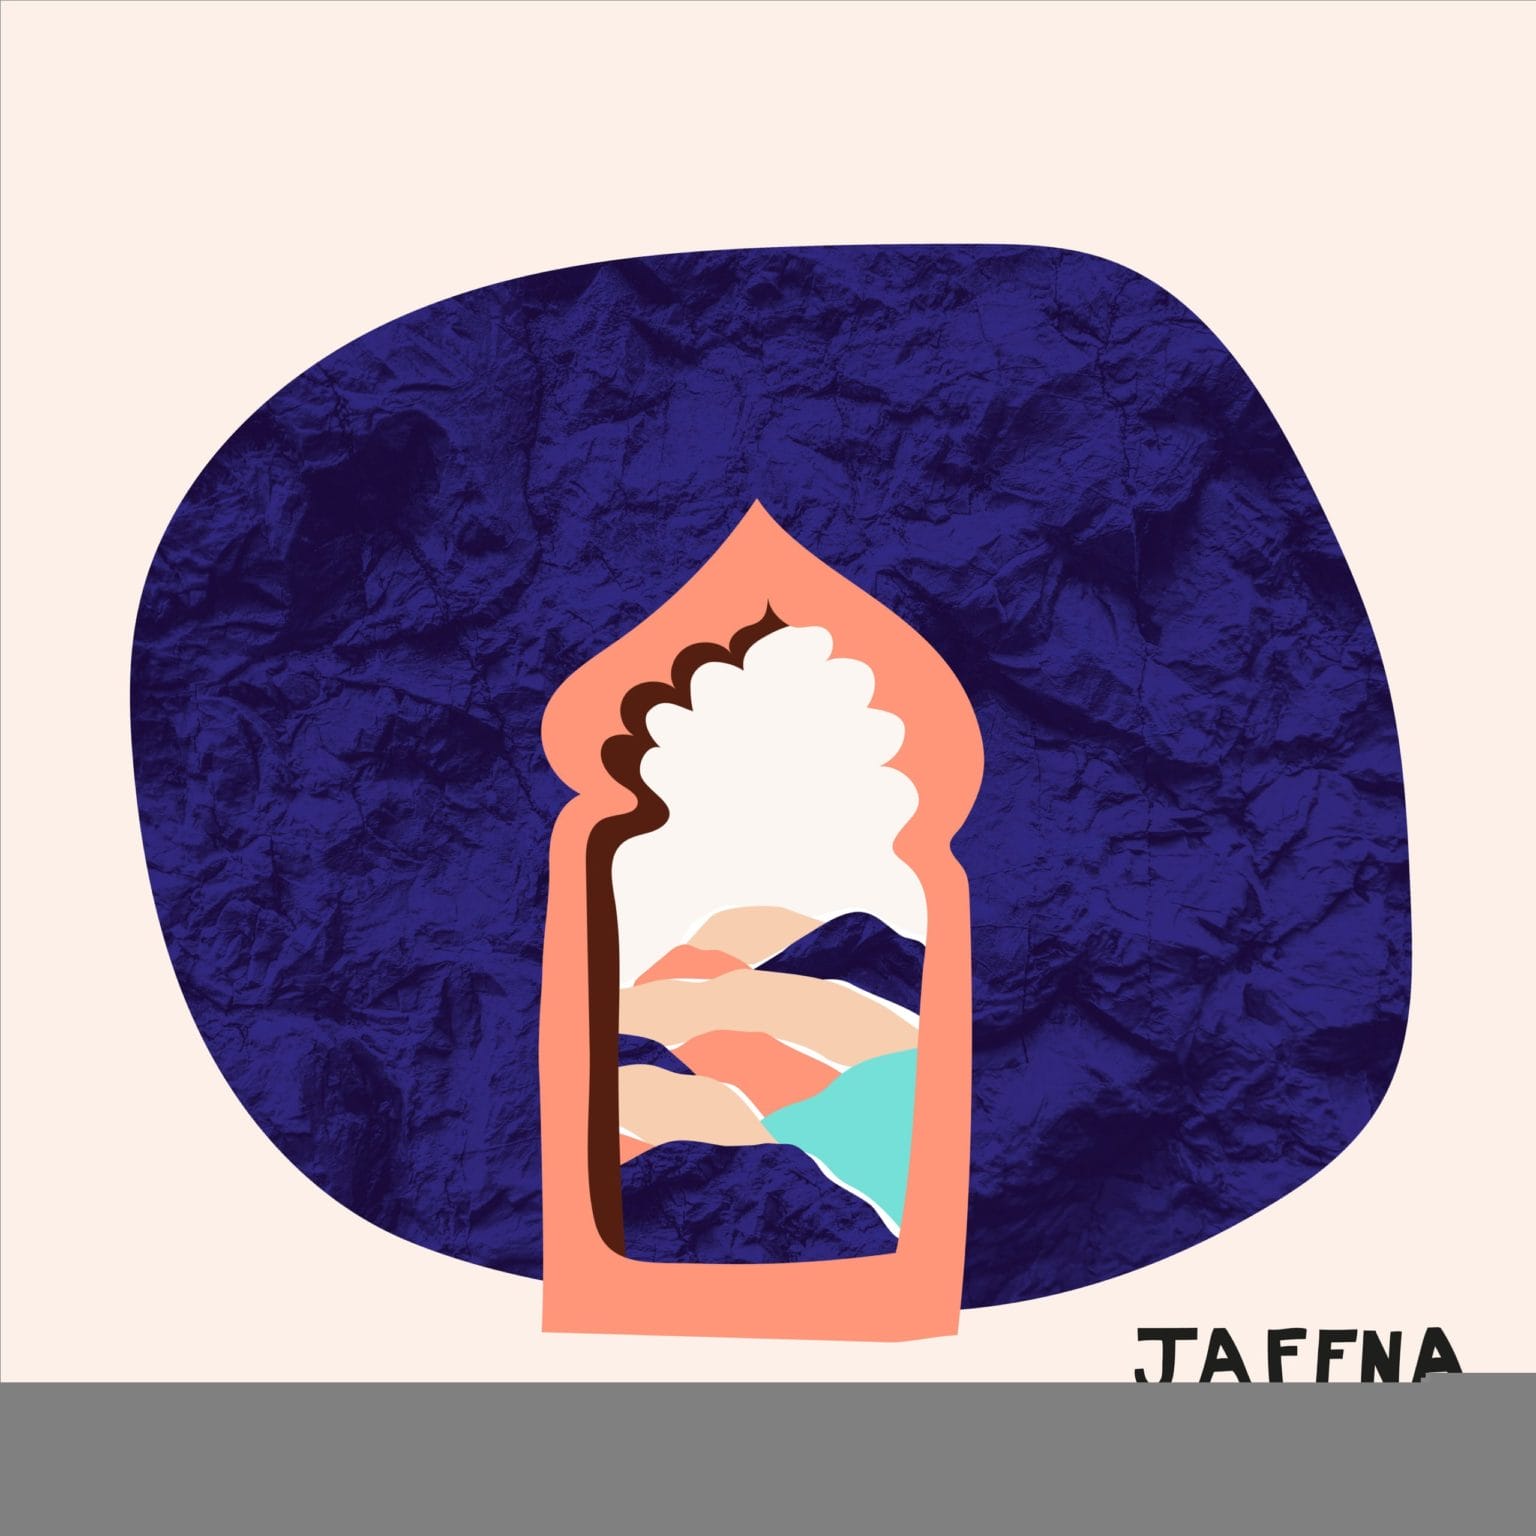 Jaffna nous emmène plus loin avec l’EP “Pieces of Colour”